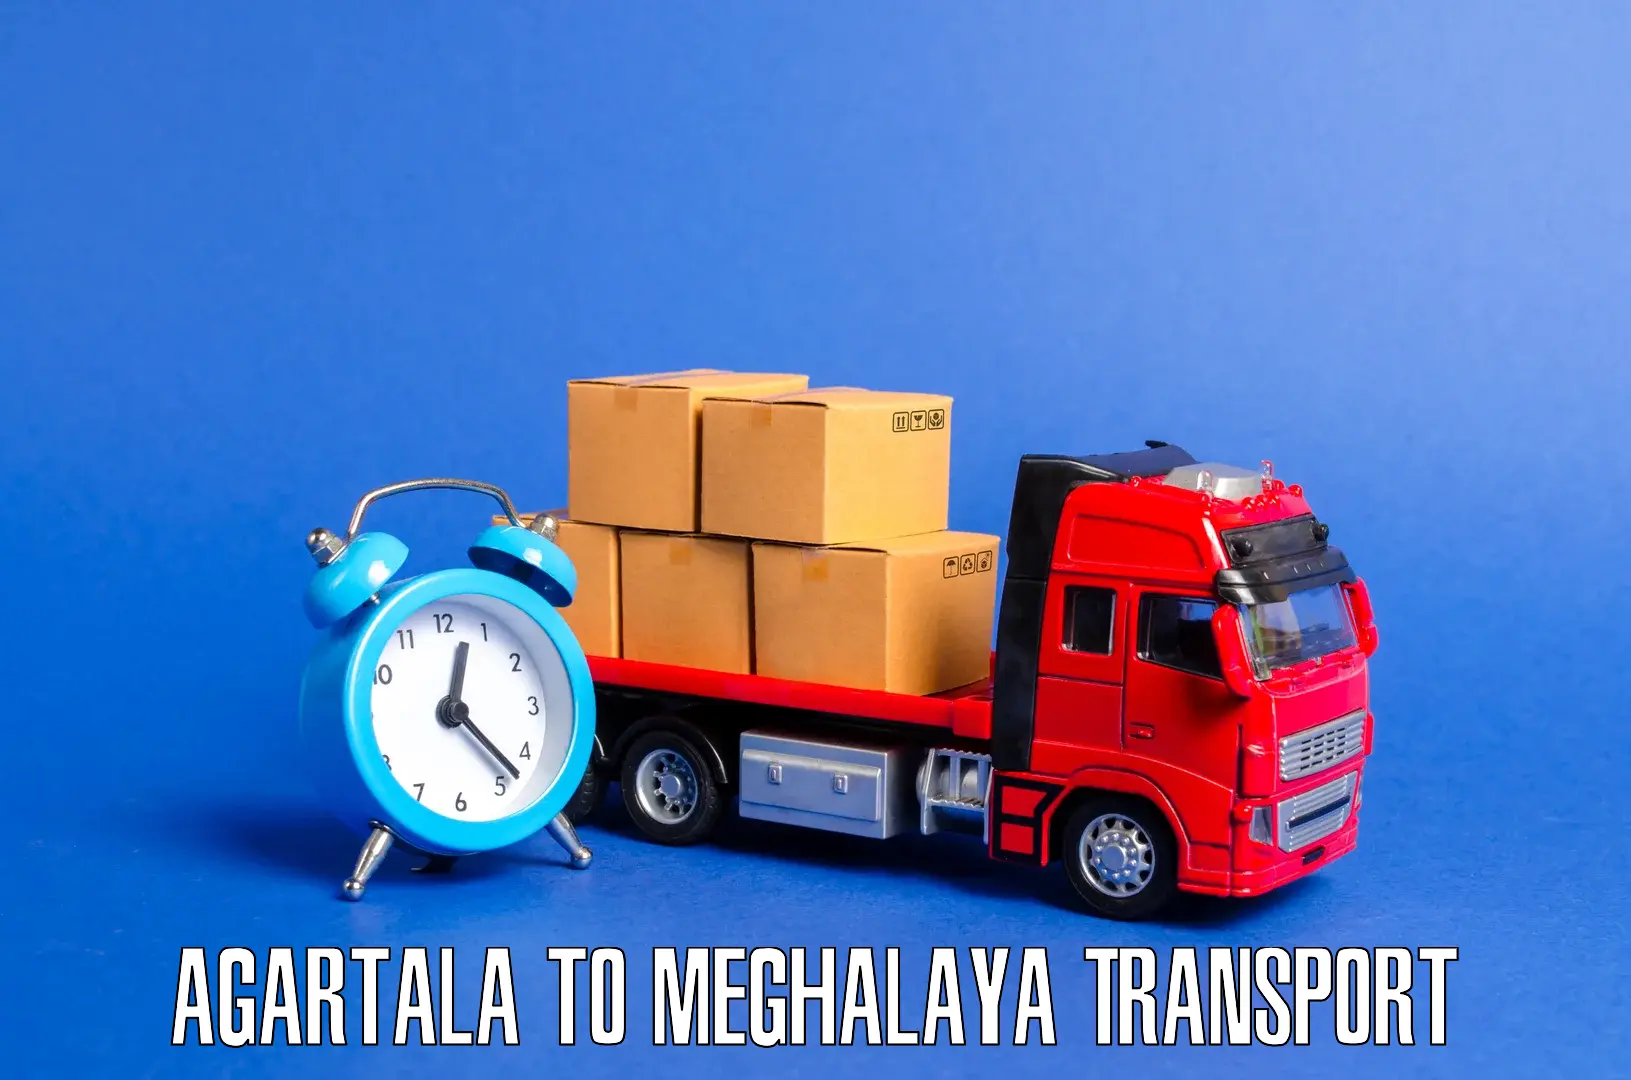 Nearby transport service Agartala to Jaintia Hills